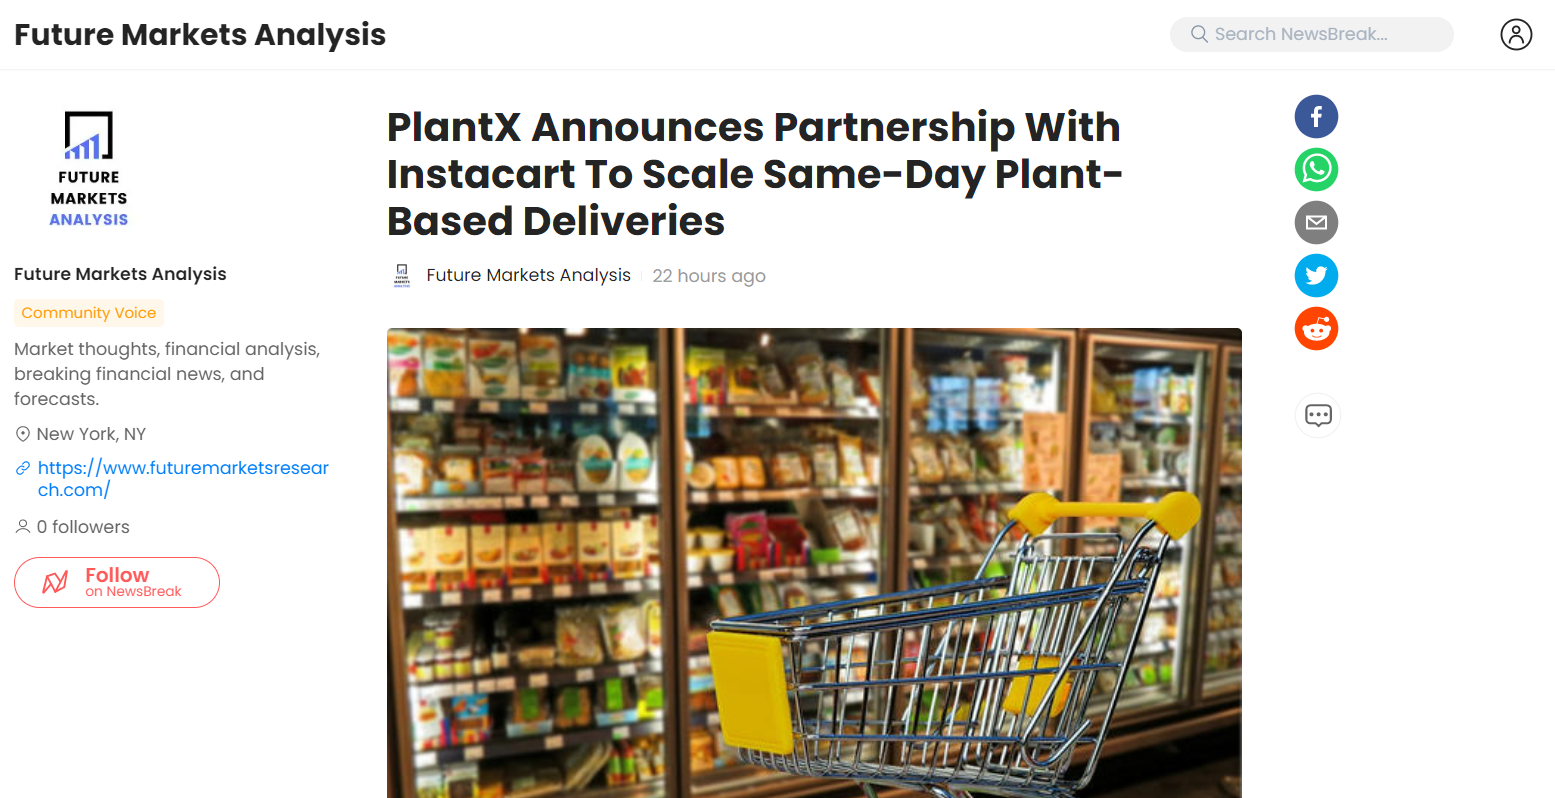 PlantX Announces Partnership